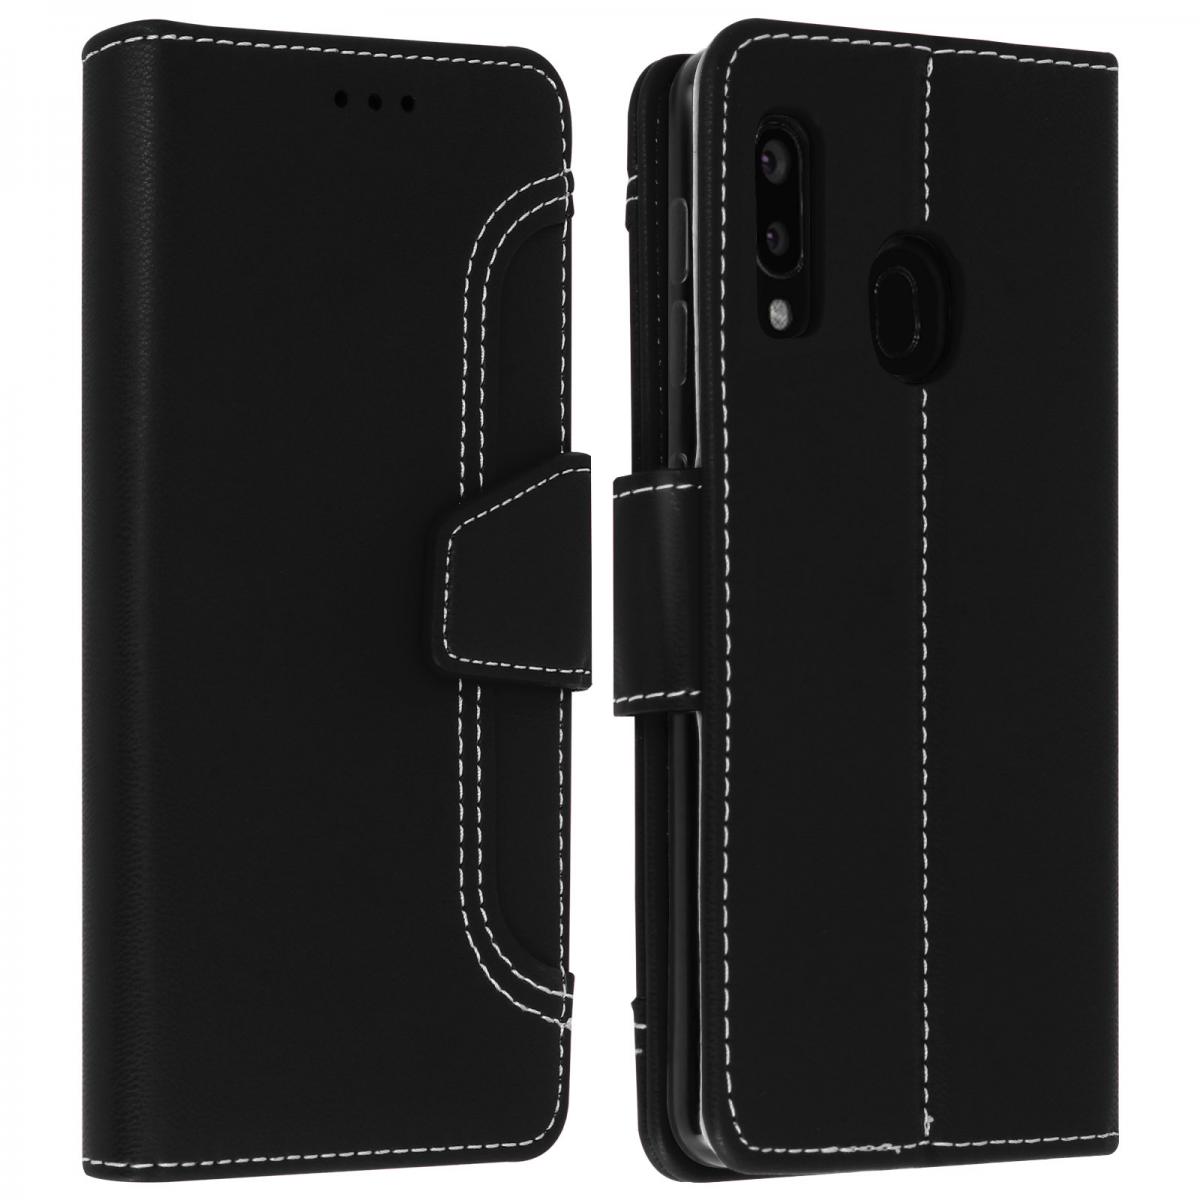 Avizar - Housse Samsung Galaxy A20e Étui Folio Portefeuille Fonction Support noir - Coque, étui smartphone